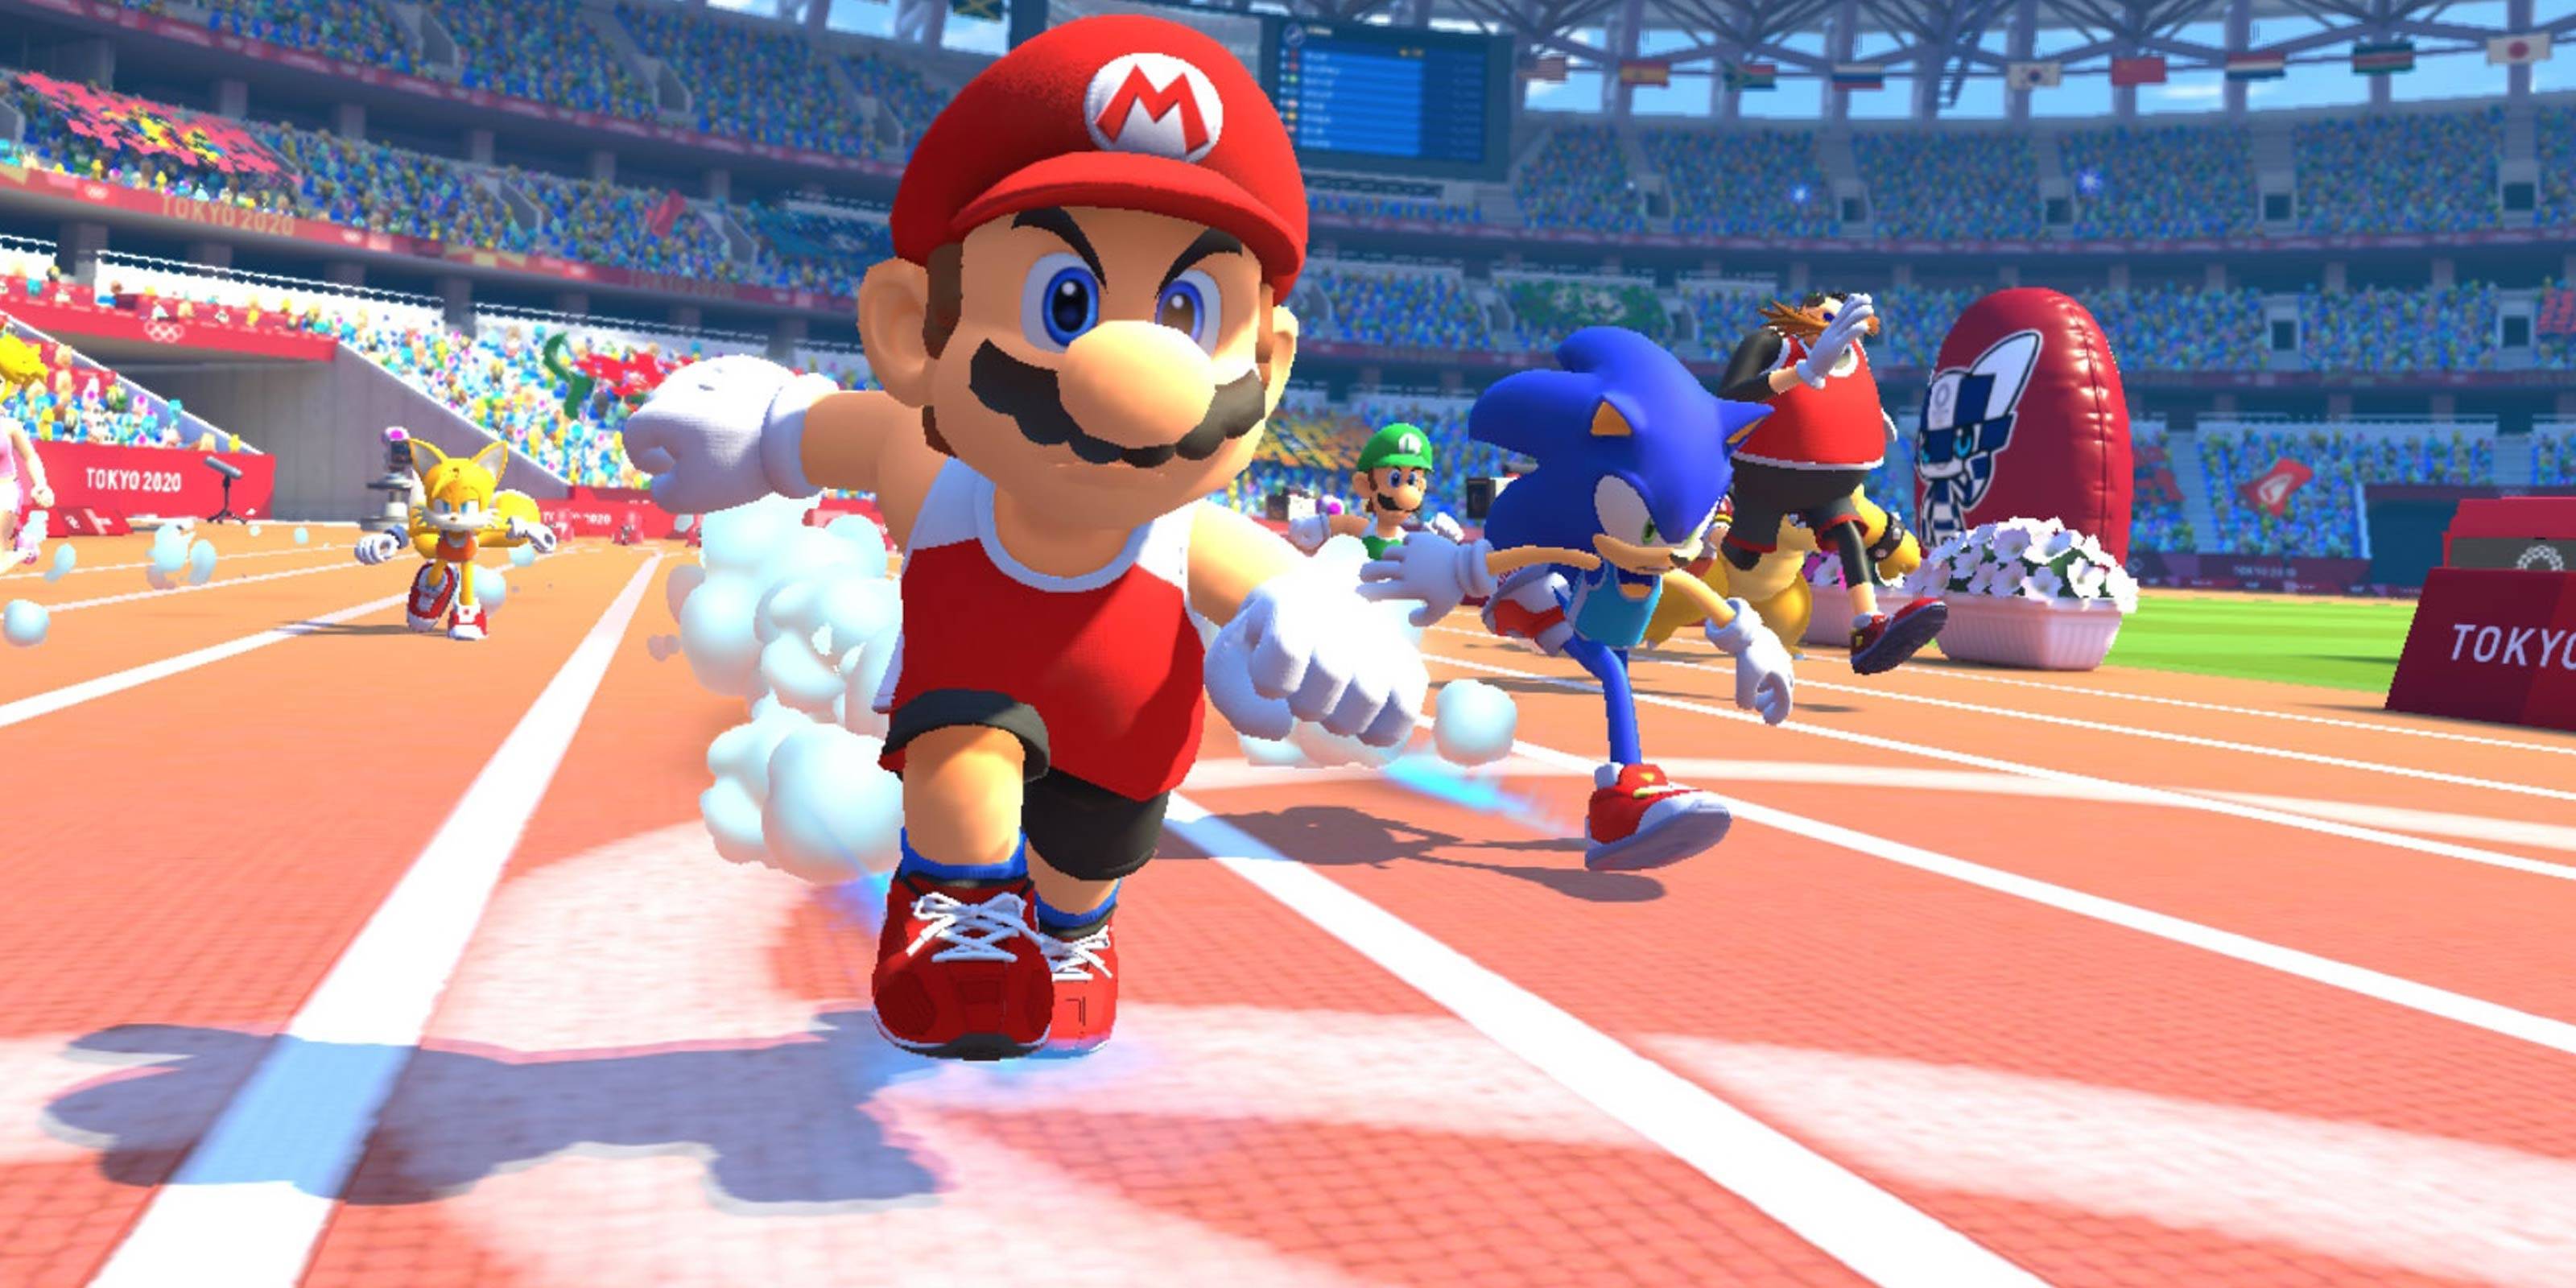 Nintendo Mario Sonicin olympialaisten juoksurata